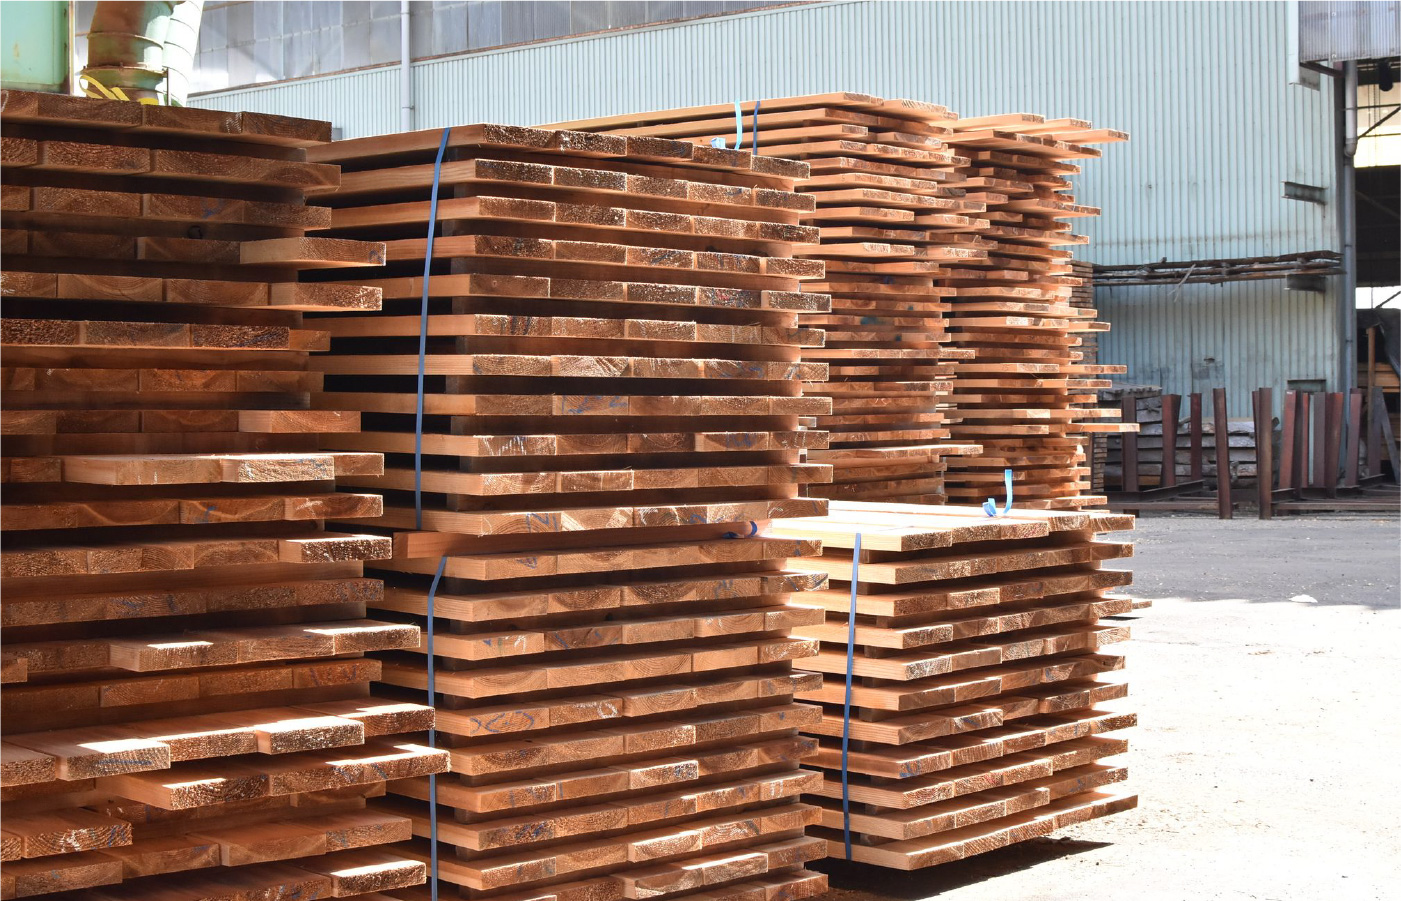 高品質な国産材を使用するために中西木材グループと提携。